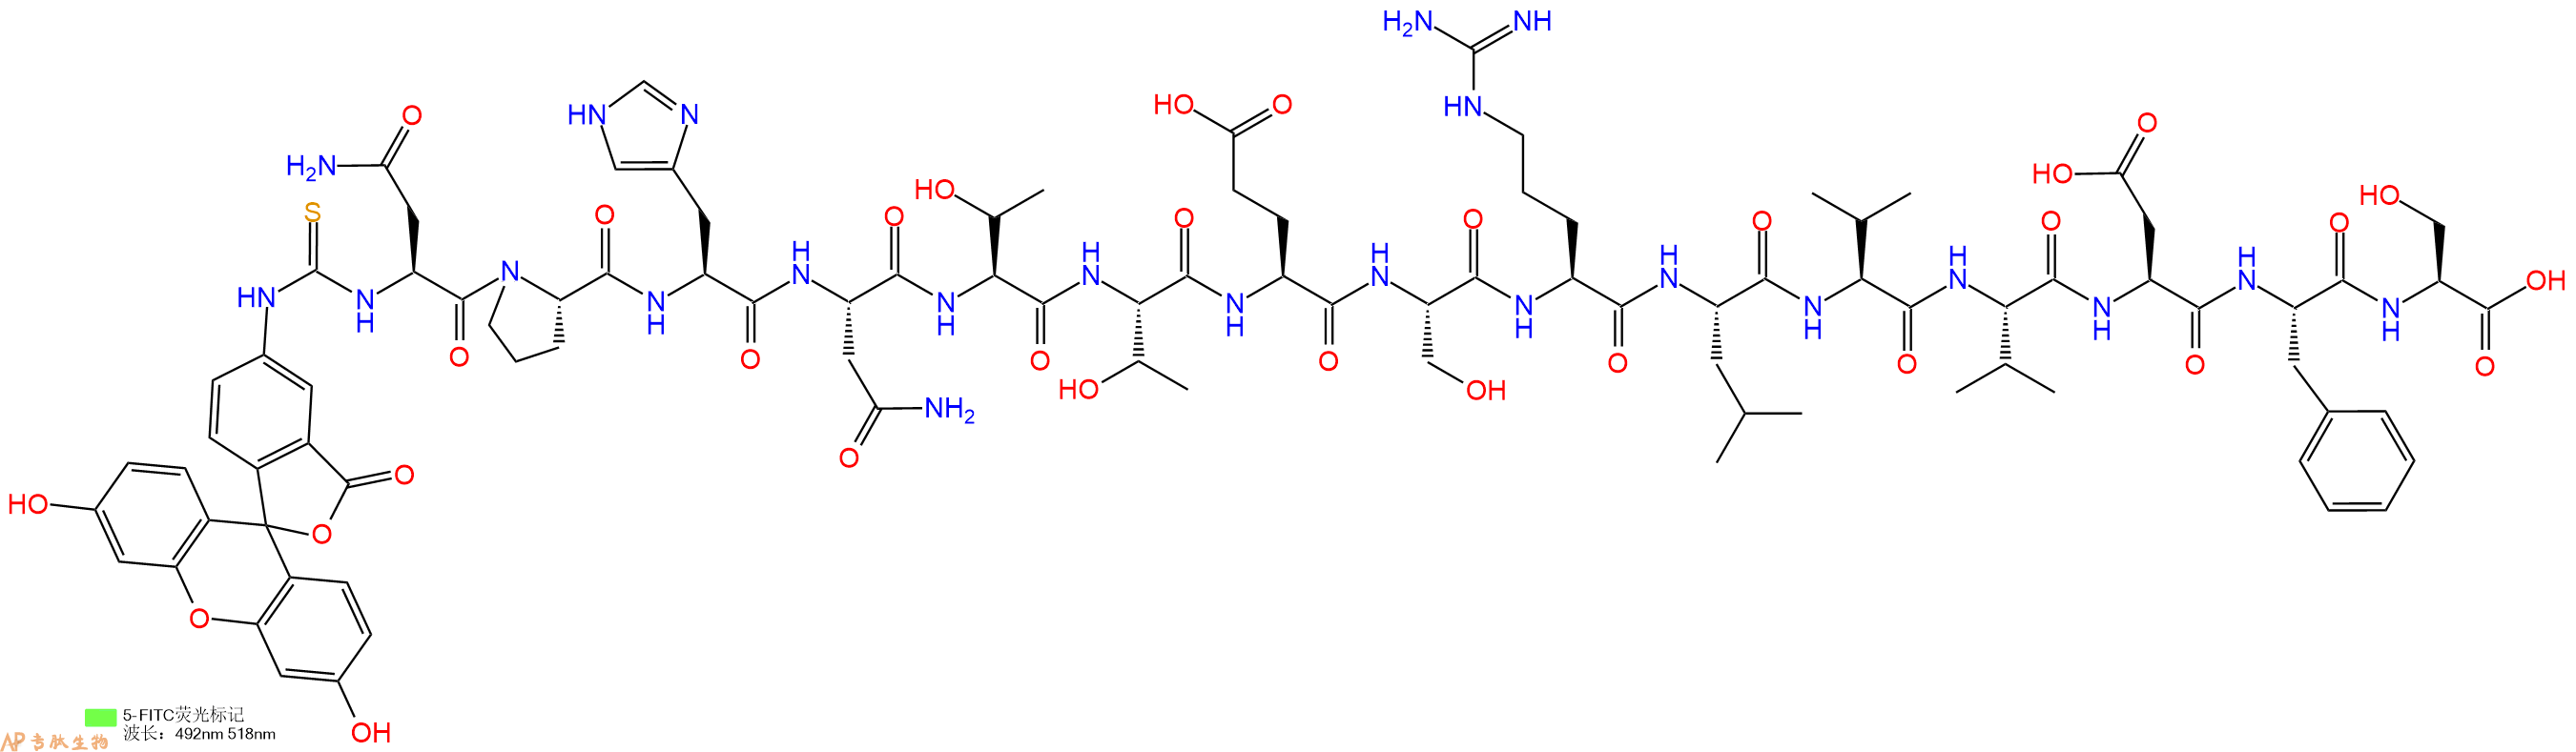 专肽生物产品5FITC-Asn-Pro-His-Asn-Thr-Thr-Glu-Ser-Arg-Leu-Val-